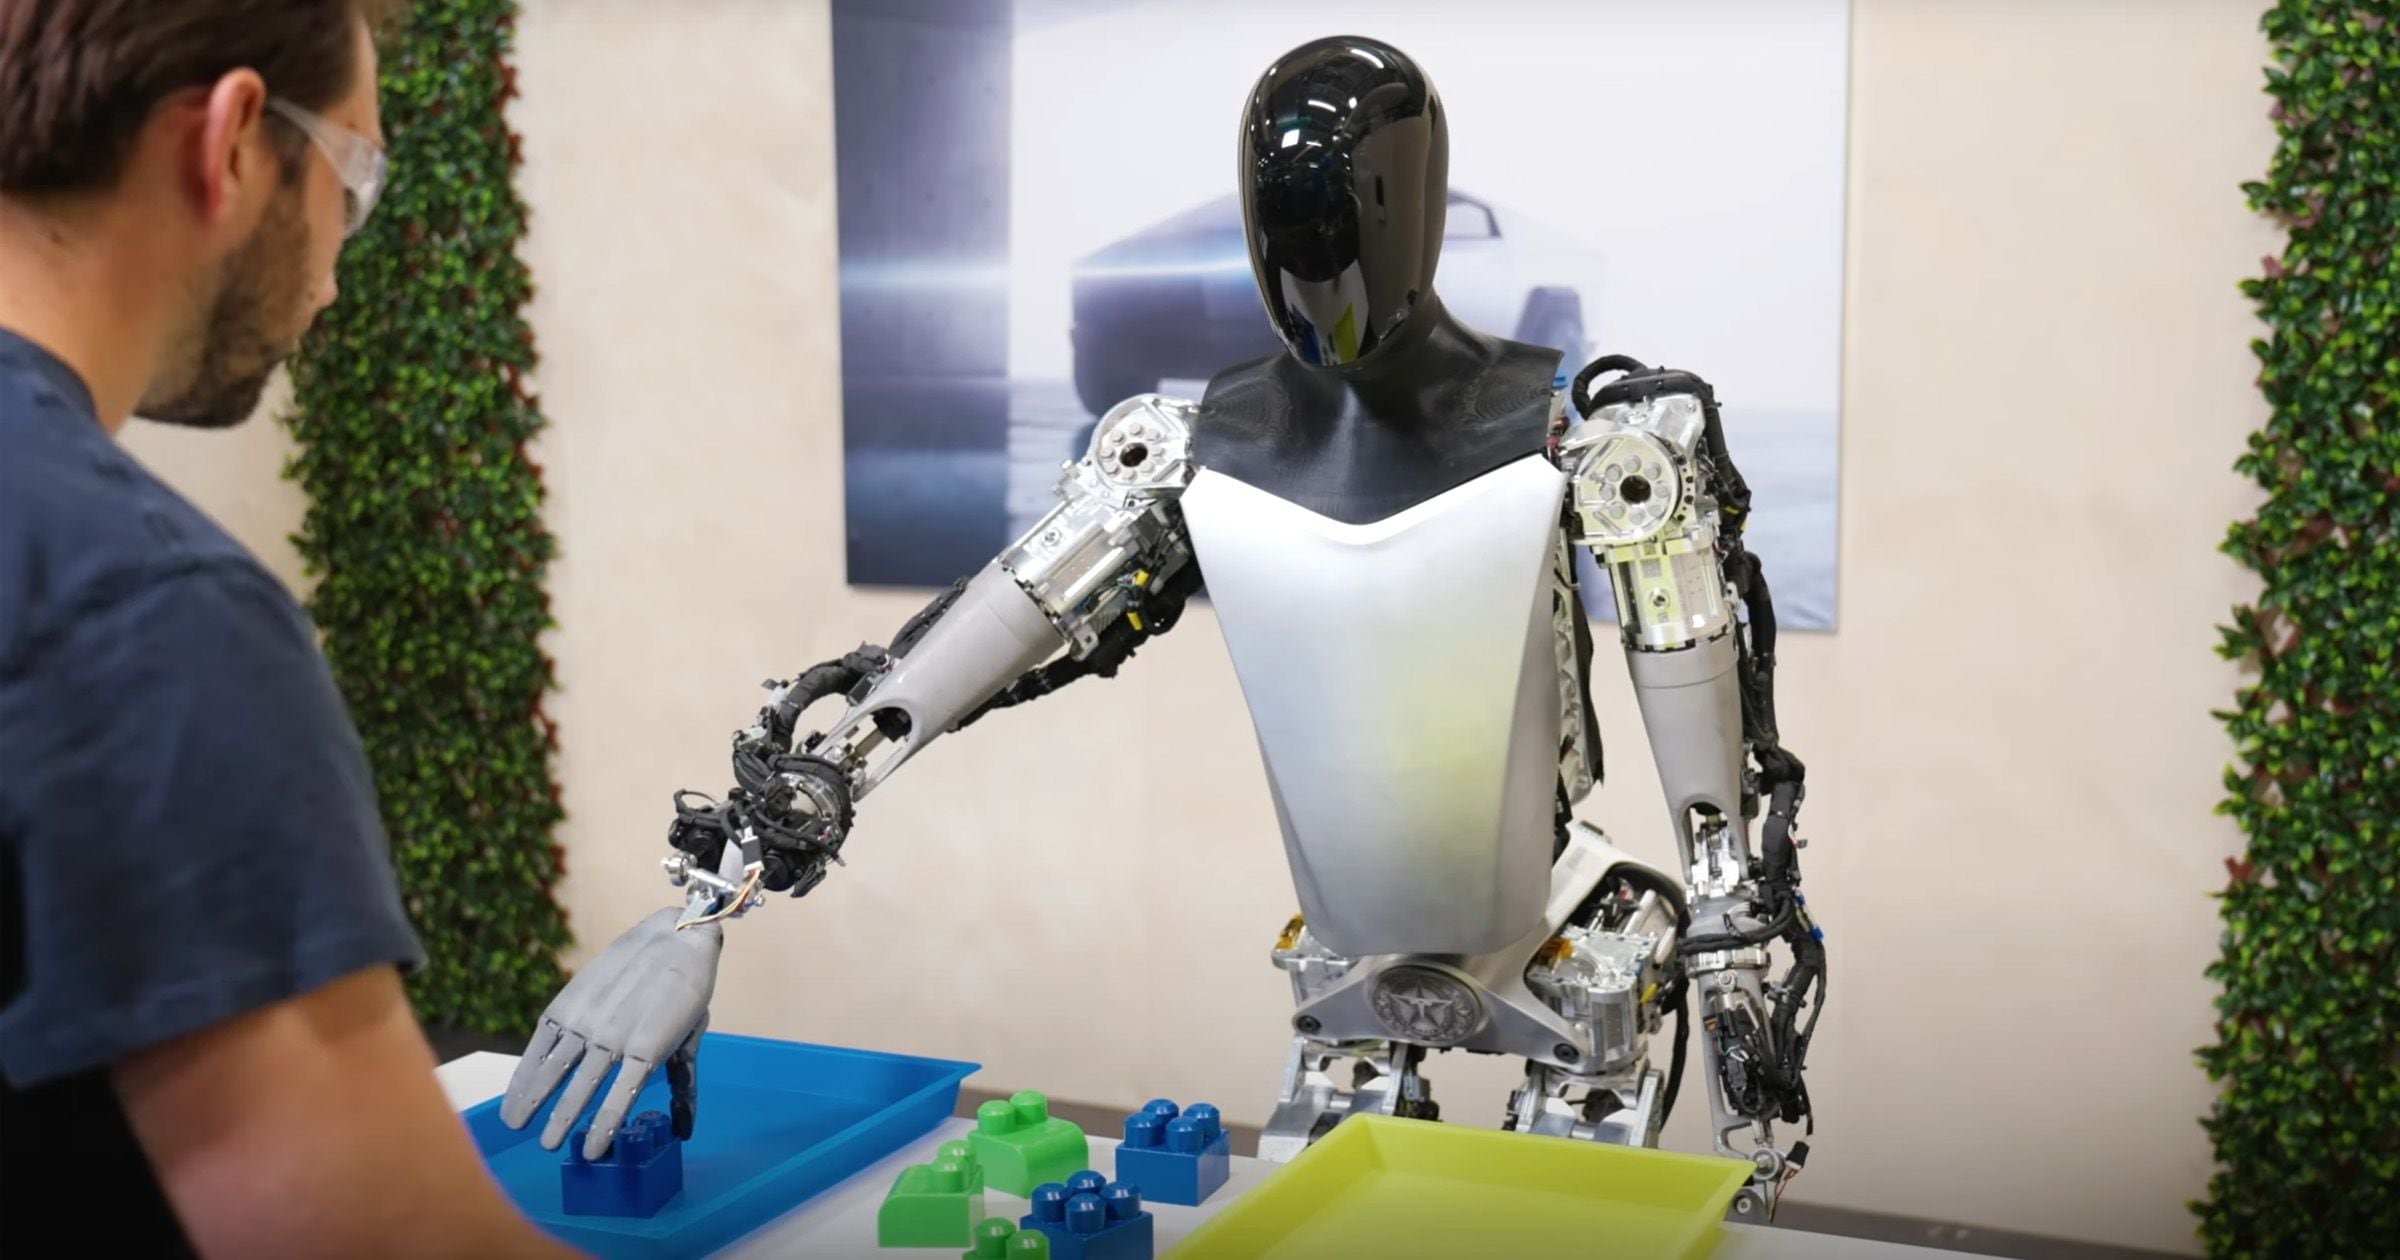 El robot puede autocalibrar sus brazos y piernas, y también realizar posturas de yoga. (Captura de pantalla: @Tesla_Optimus)